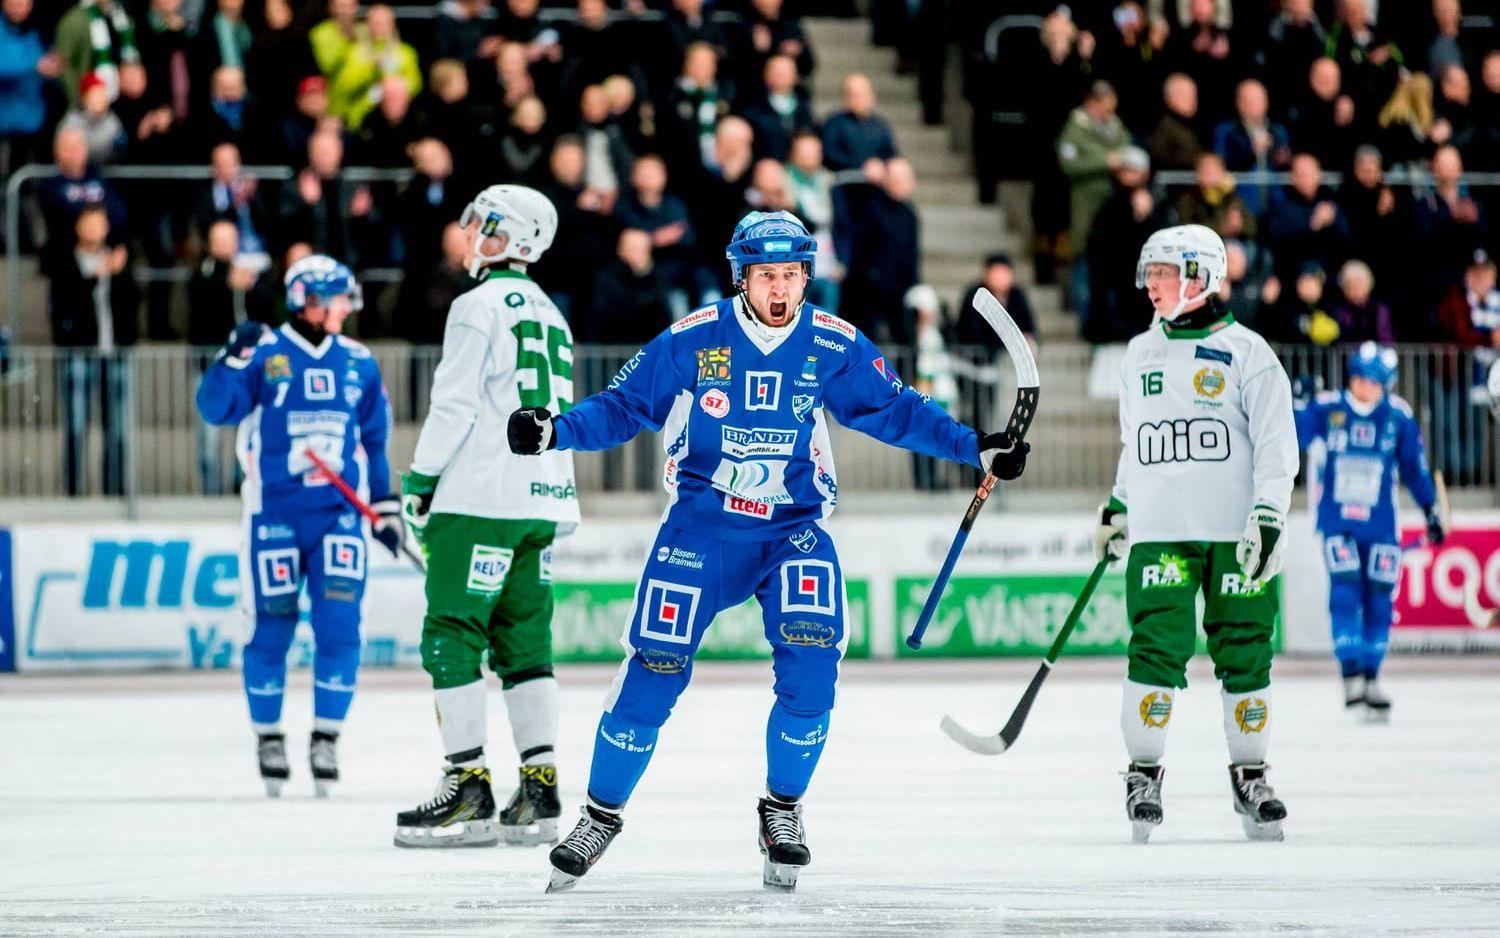 FYRAMÅLSSKYTT. Joakim Hedqvist visade på nytt att gammal är äldst, och klev fram när IFK darrade lite grann mot slutet av matchen. ”Jocke” stod för både 6-3 och 7-5 i ett läge då Hammarby jagade som mest. Bilder: SEBASTIAN LAMOTTE